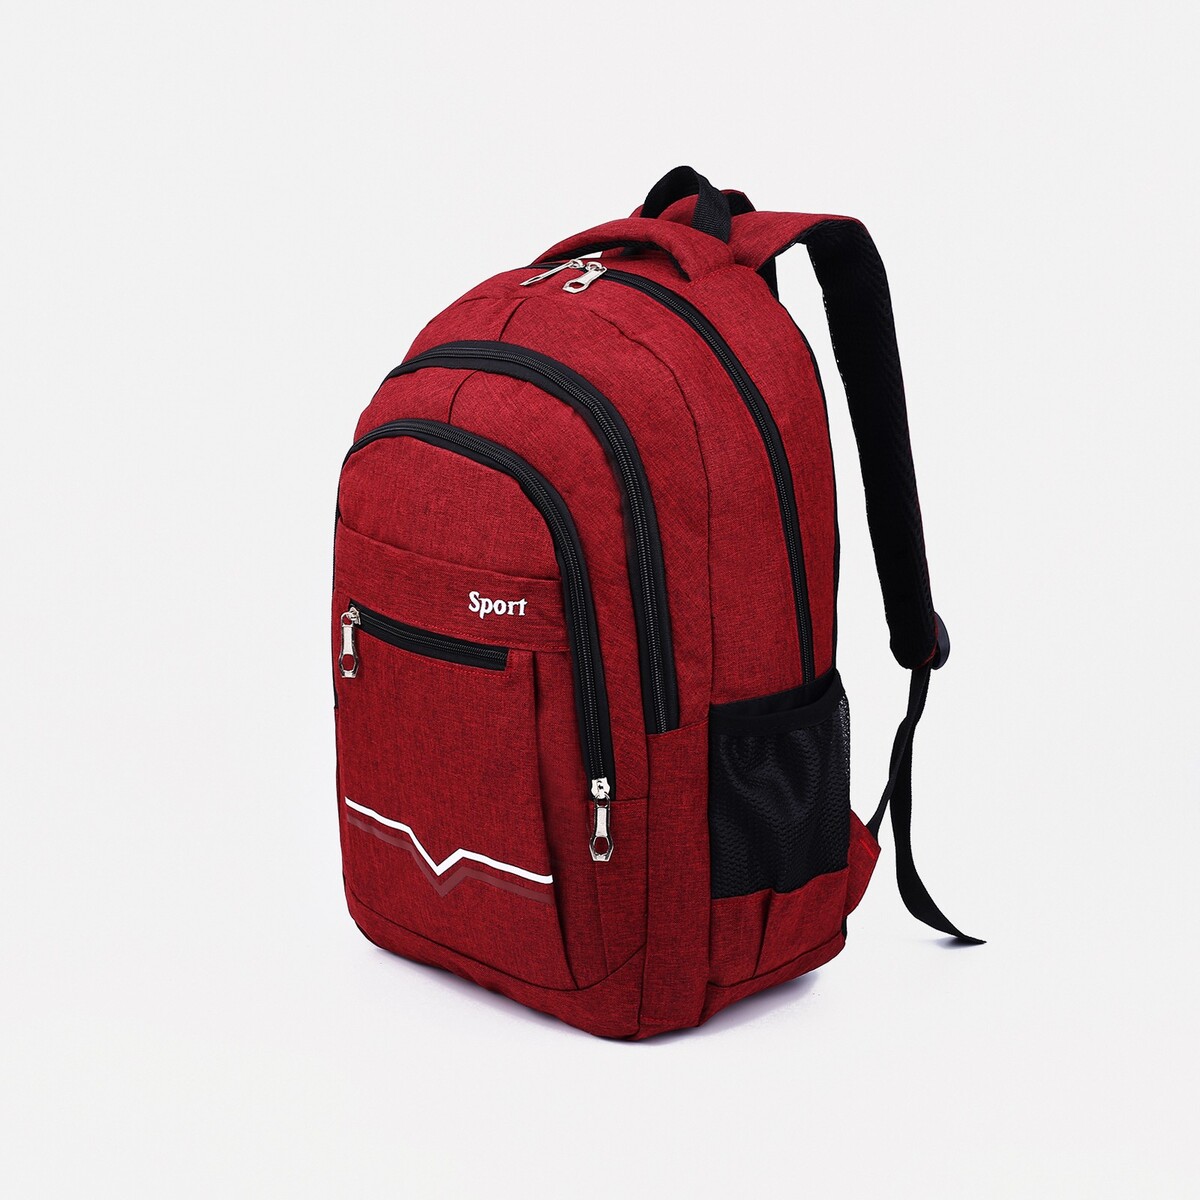 Рюкзак на молнии, 2 наружных кармана, цвет бордовый pixel bag рюкзак с led дисплеем pixel plus red line бордовый